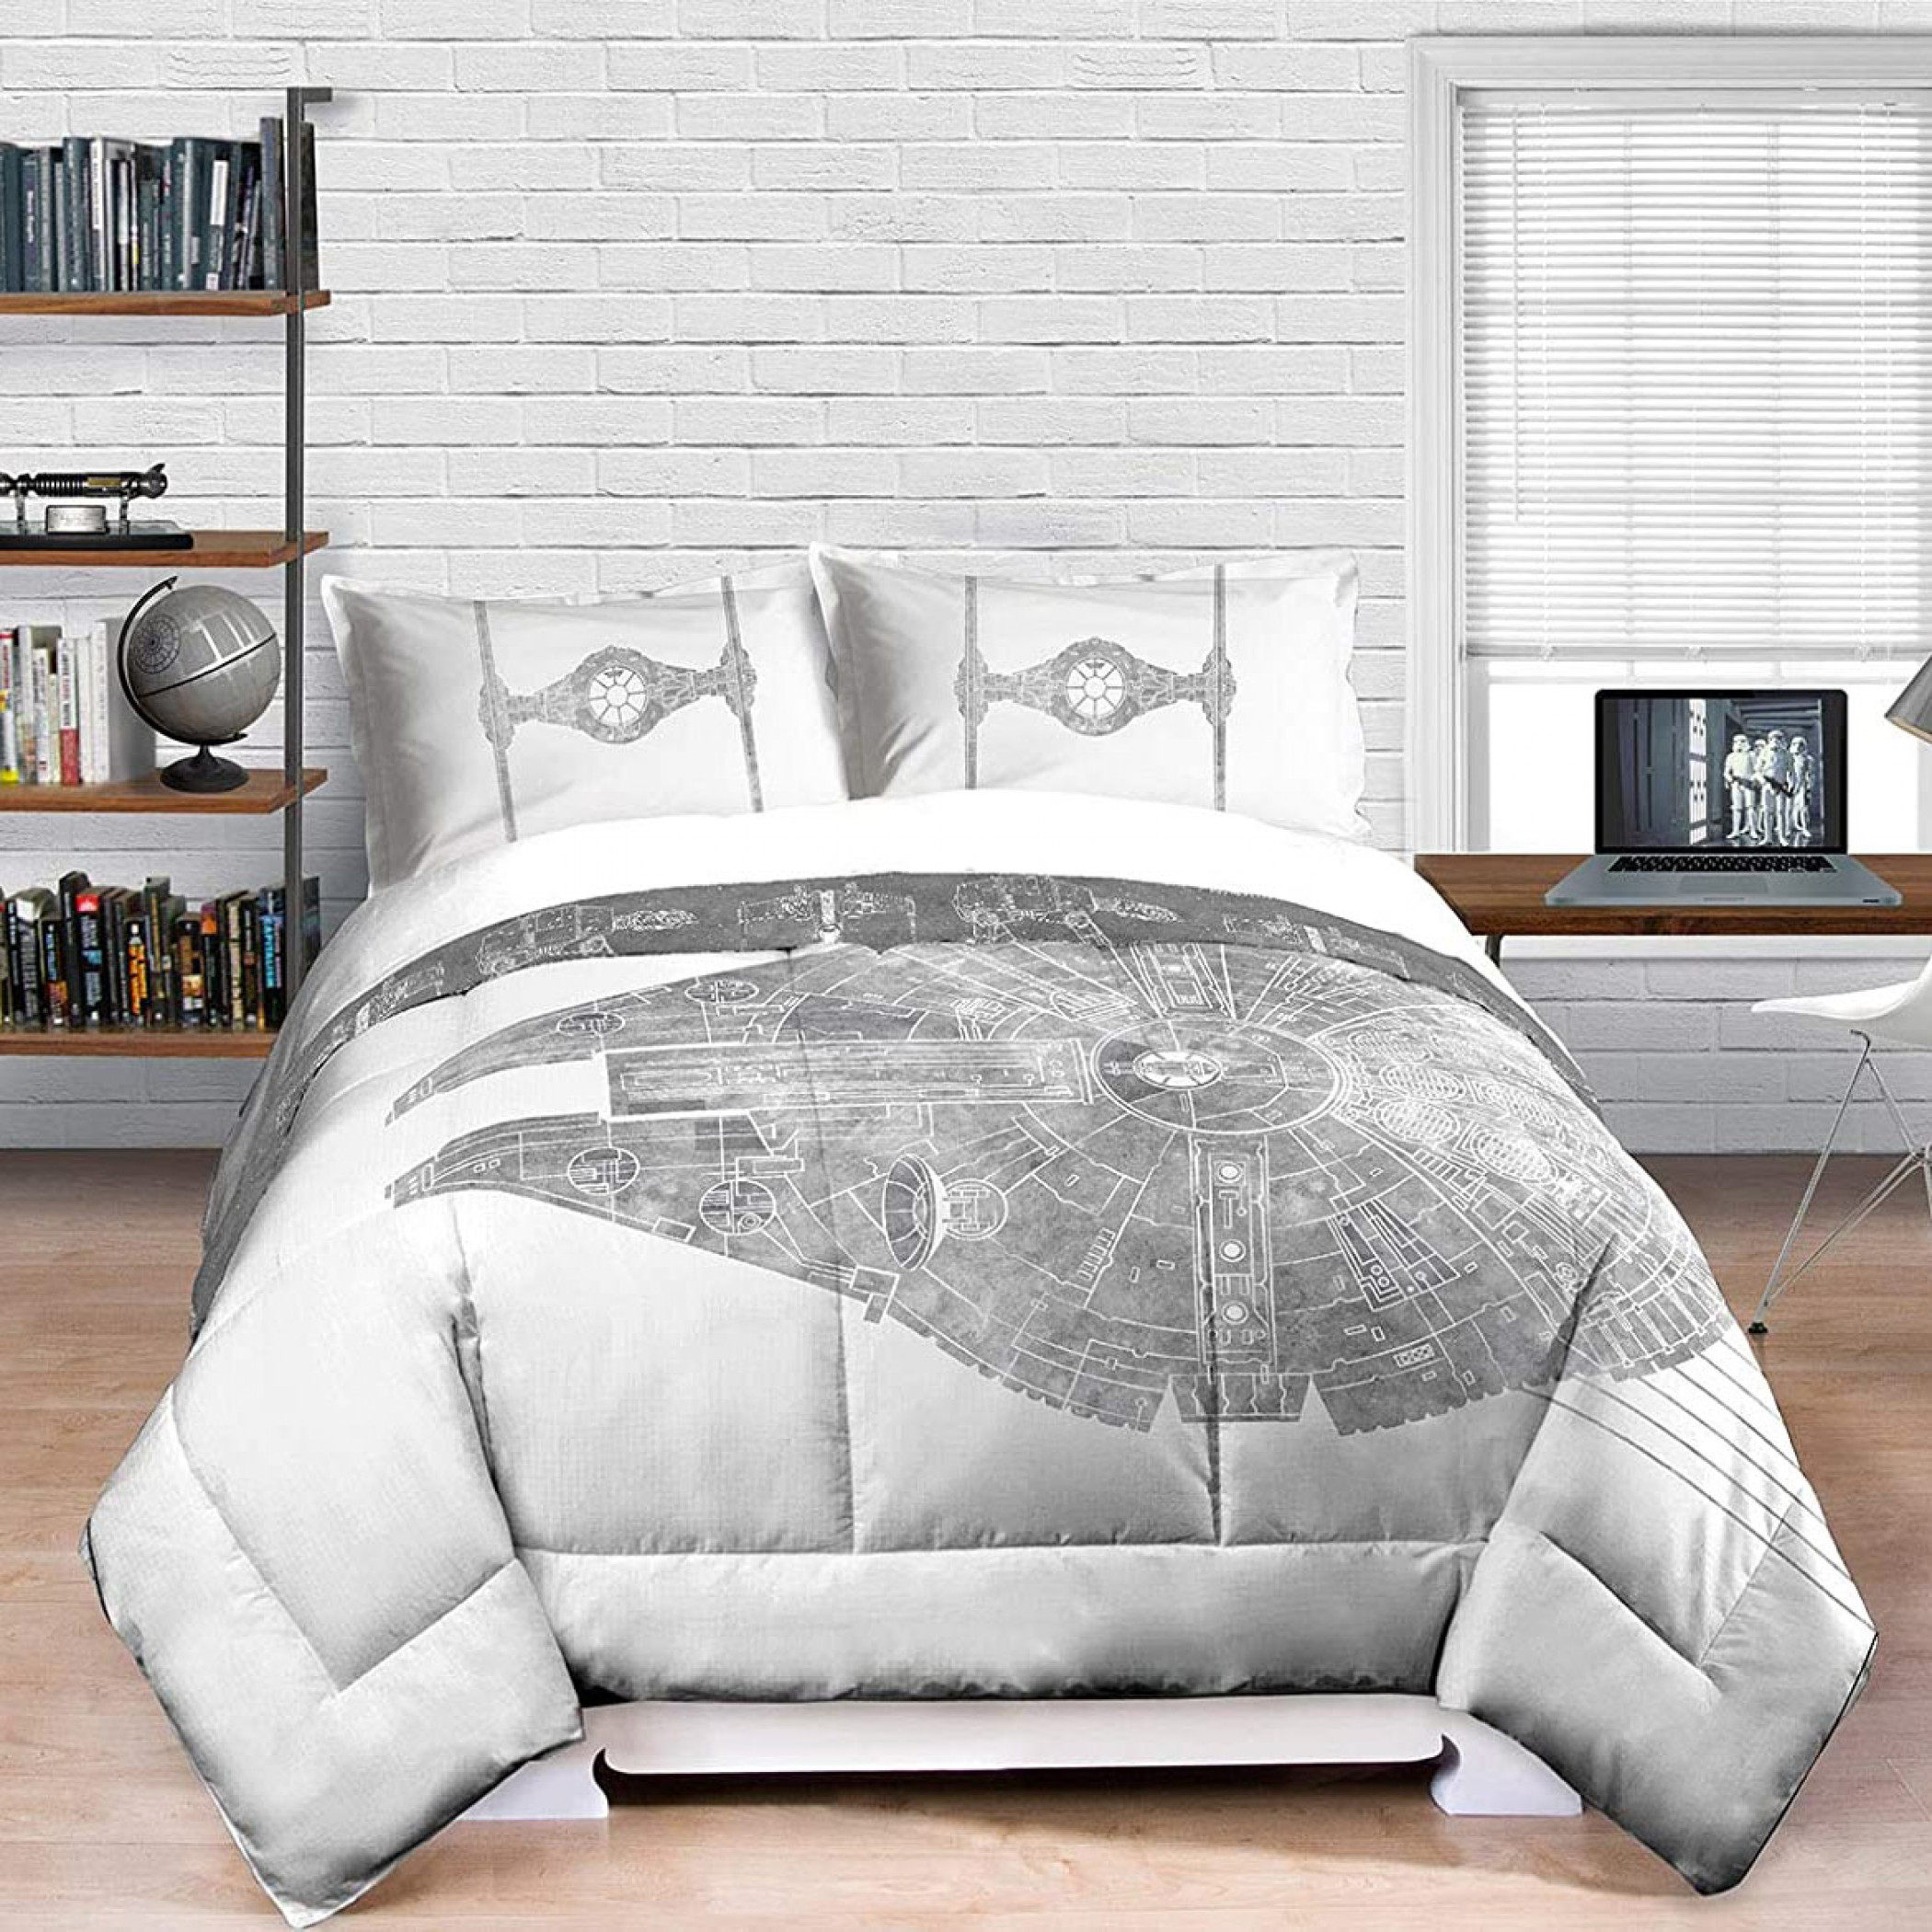 Star Wars Millenium Falcon Queen Size Comforter Bedding